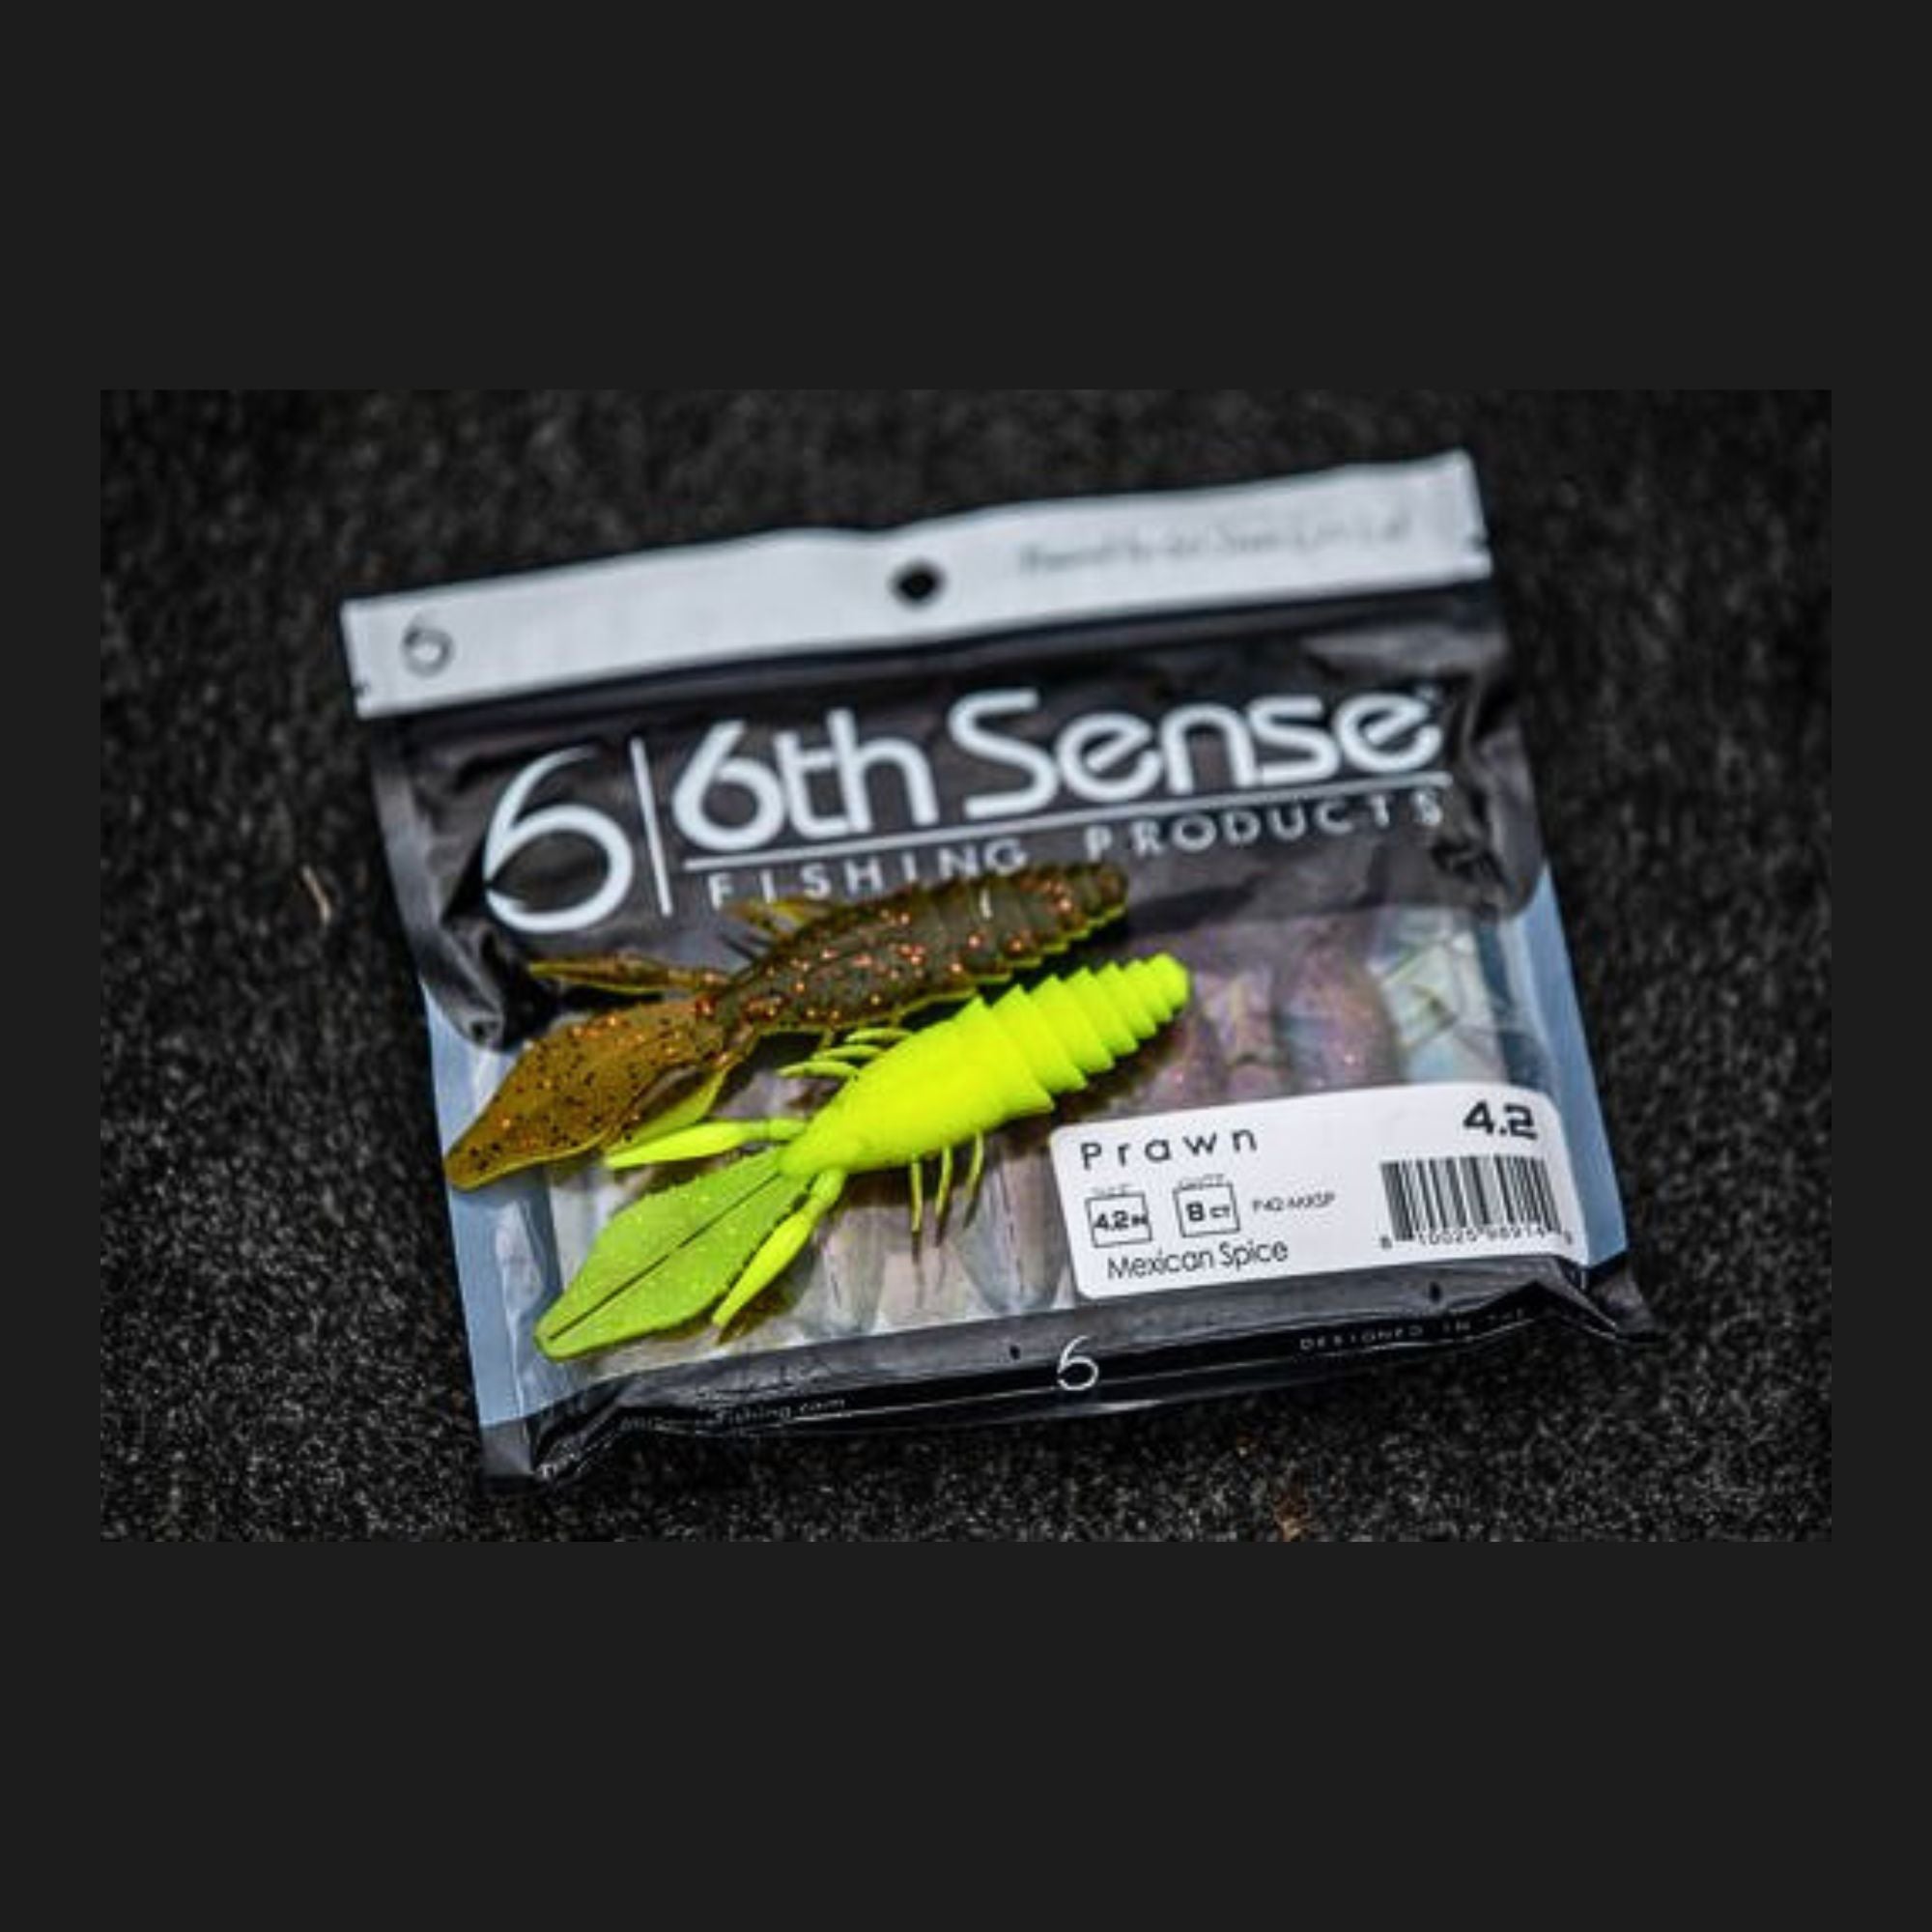 6th Sense Fishing - Soft Plastics - Prawn 4.2